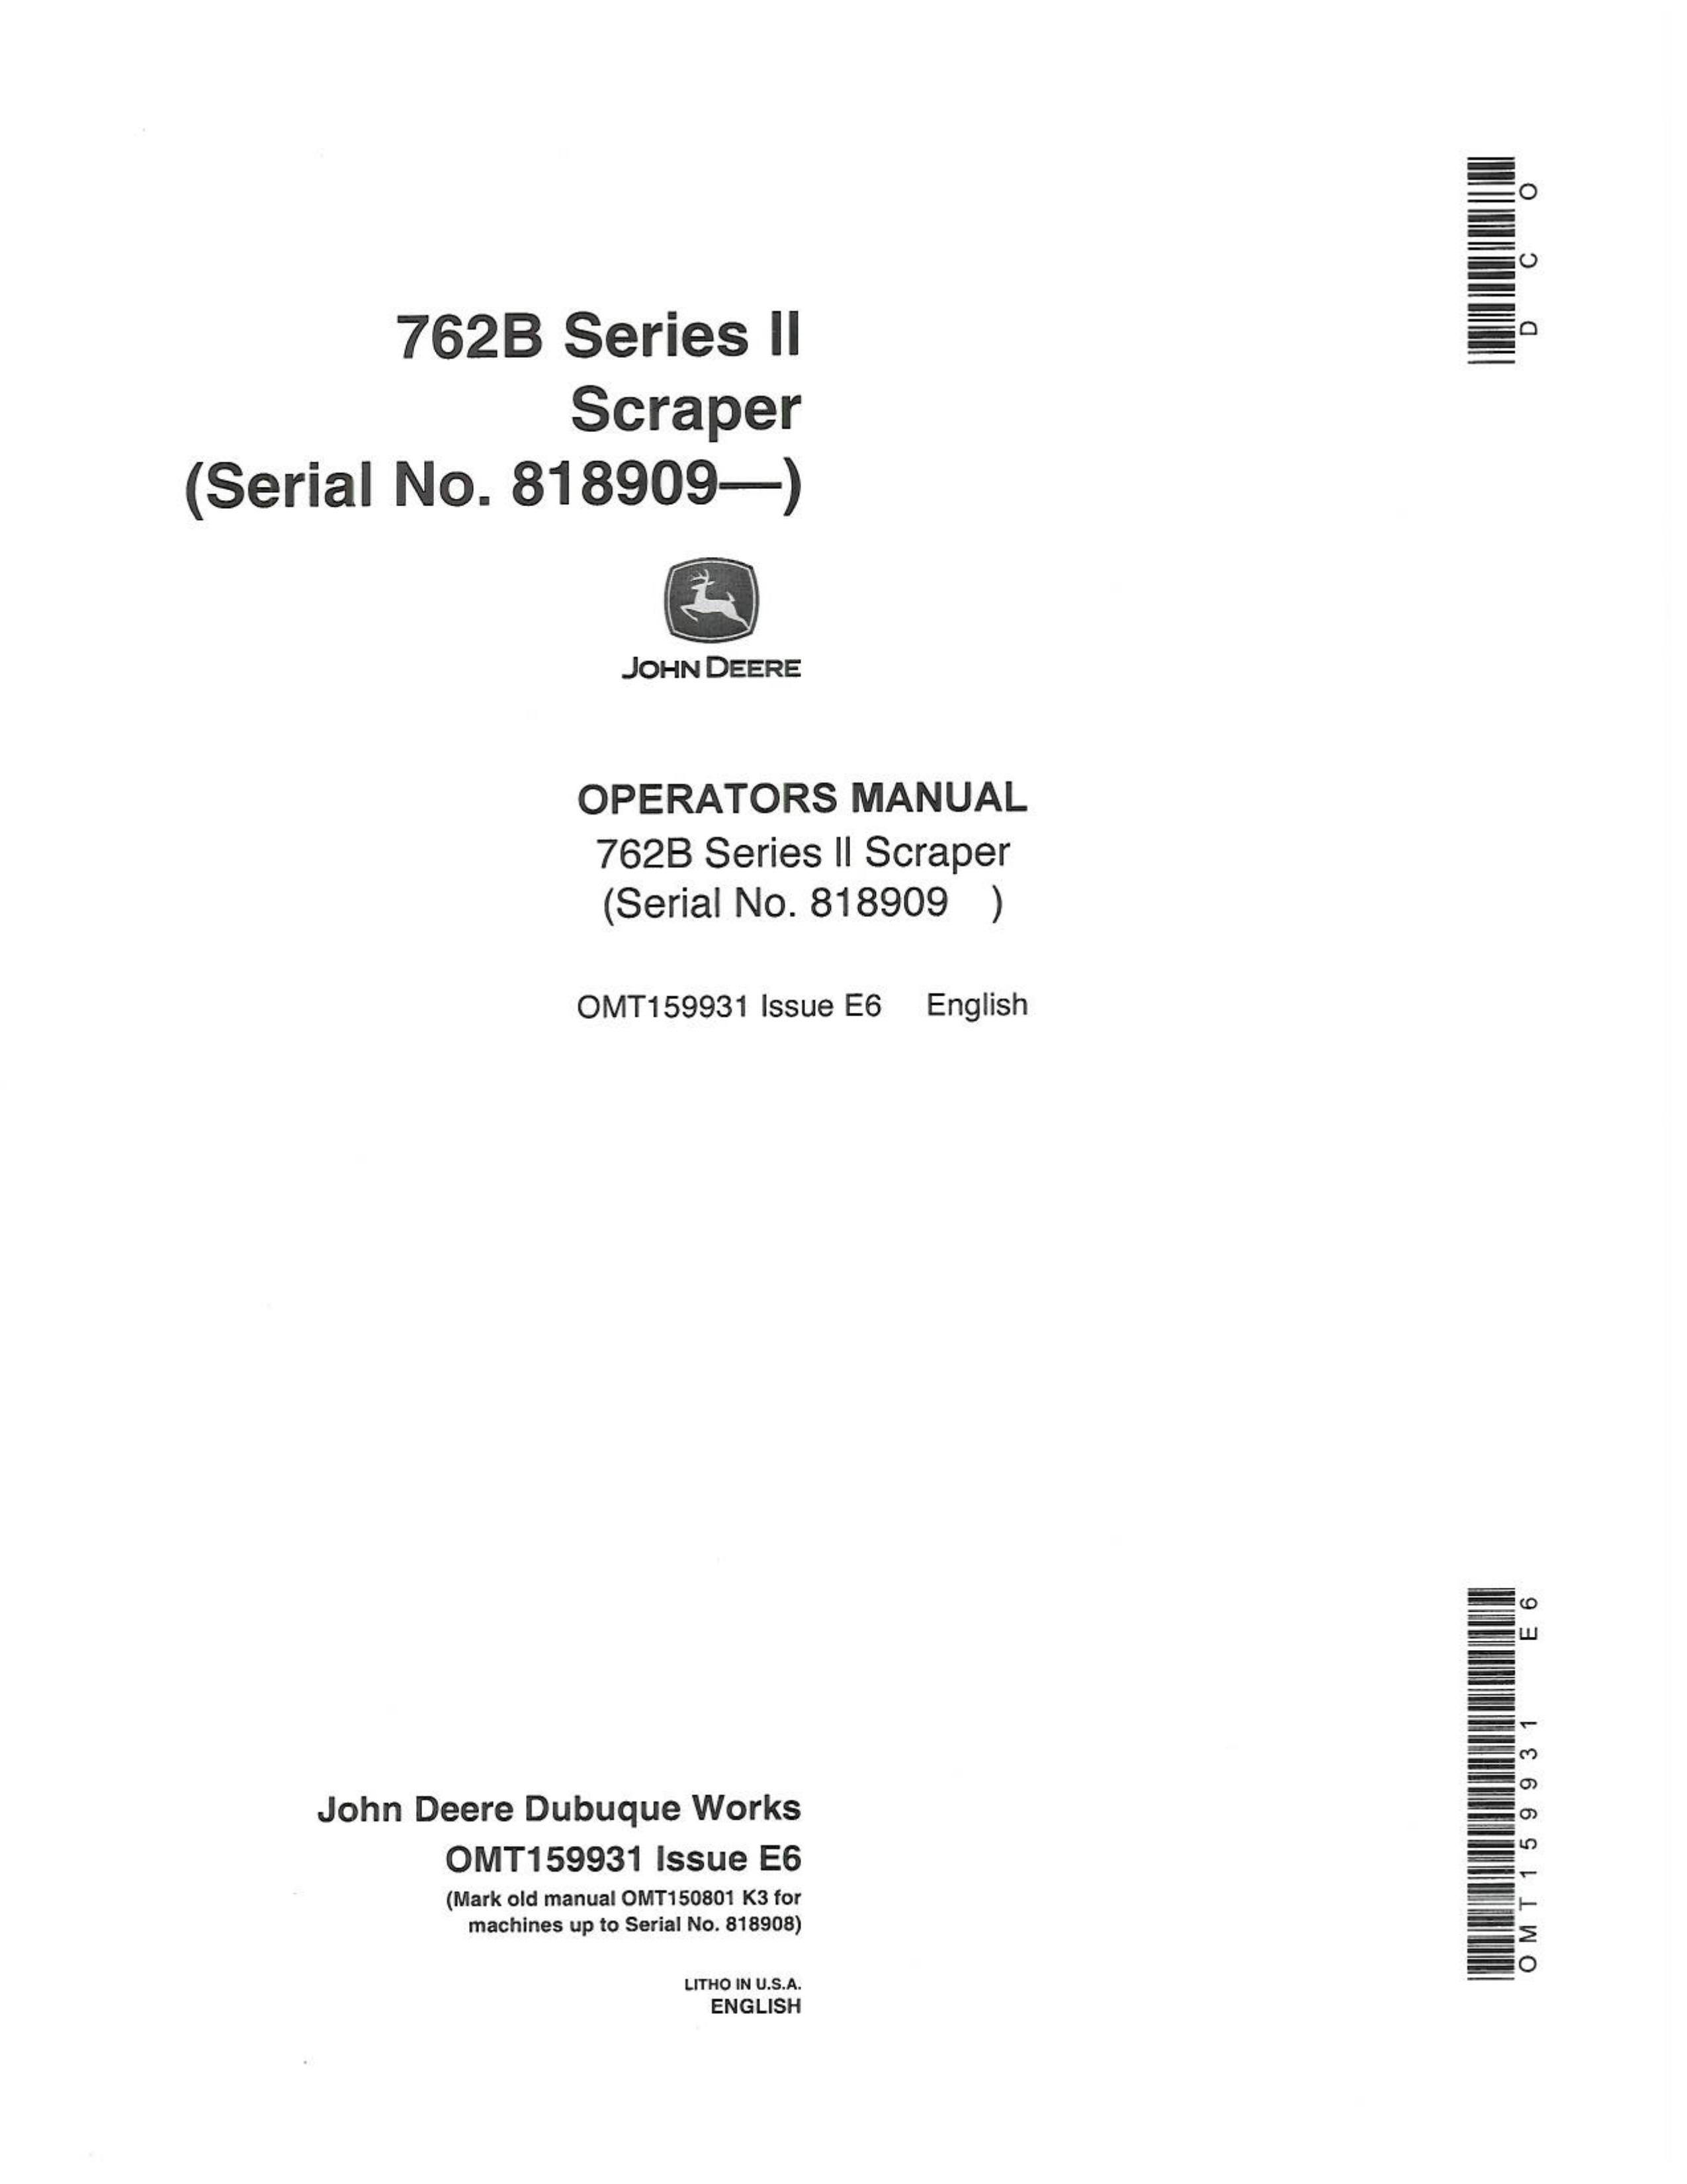 John Deere 762B Microscope & Magnifier User Manual